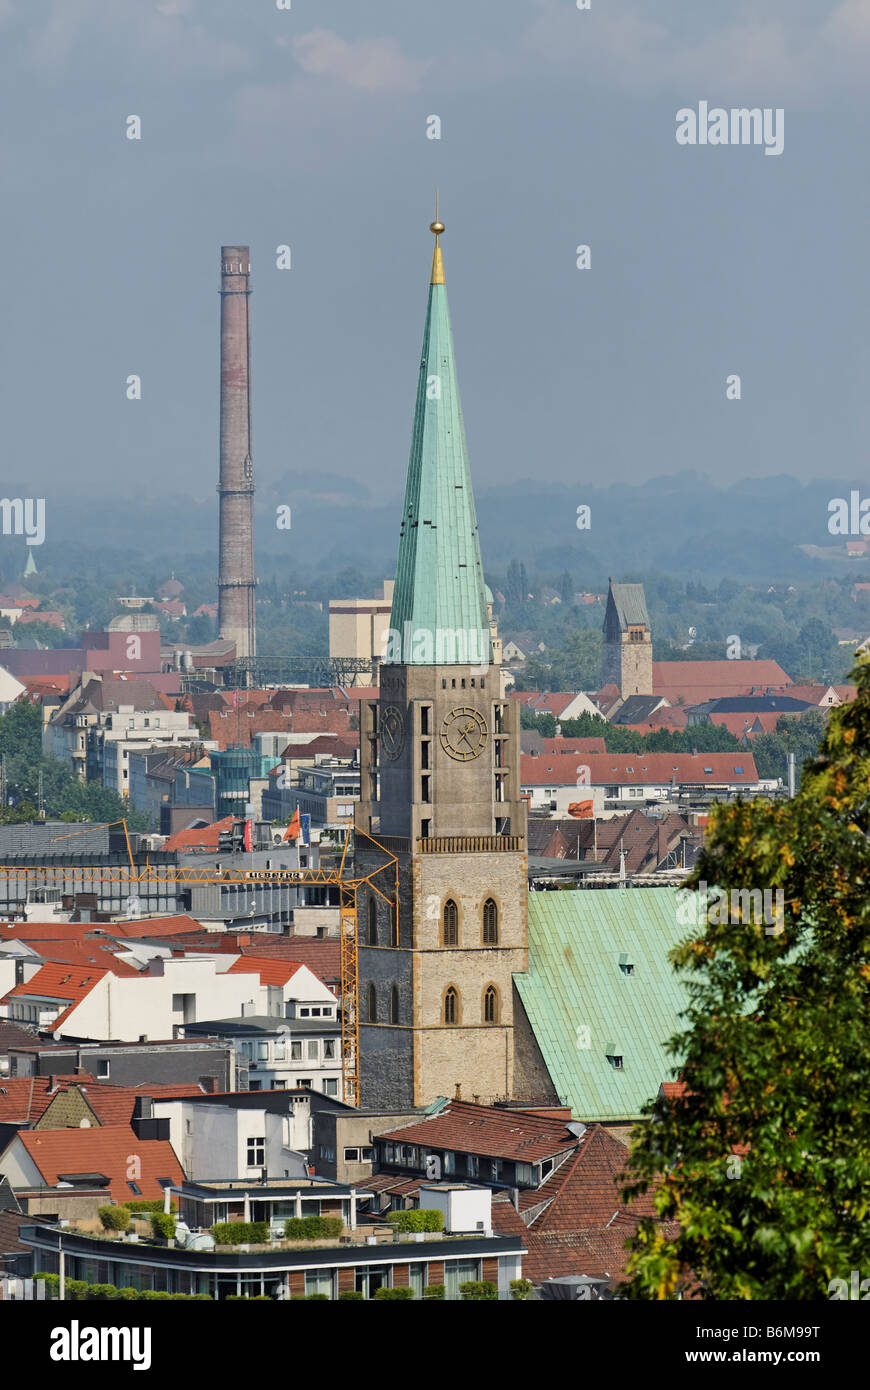 Nikolaikirche Nikolai church in Bielefeld city Germany Stock Photo